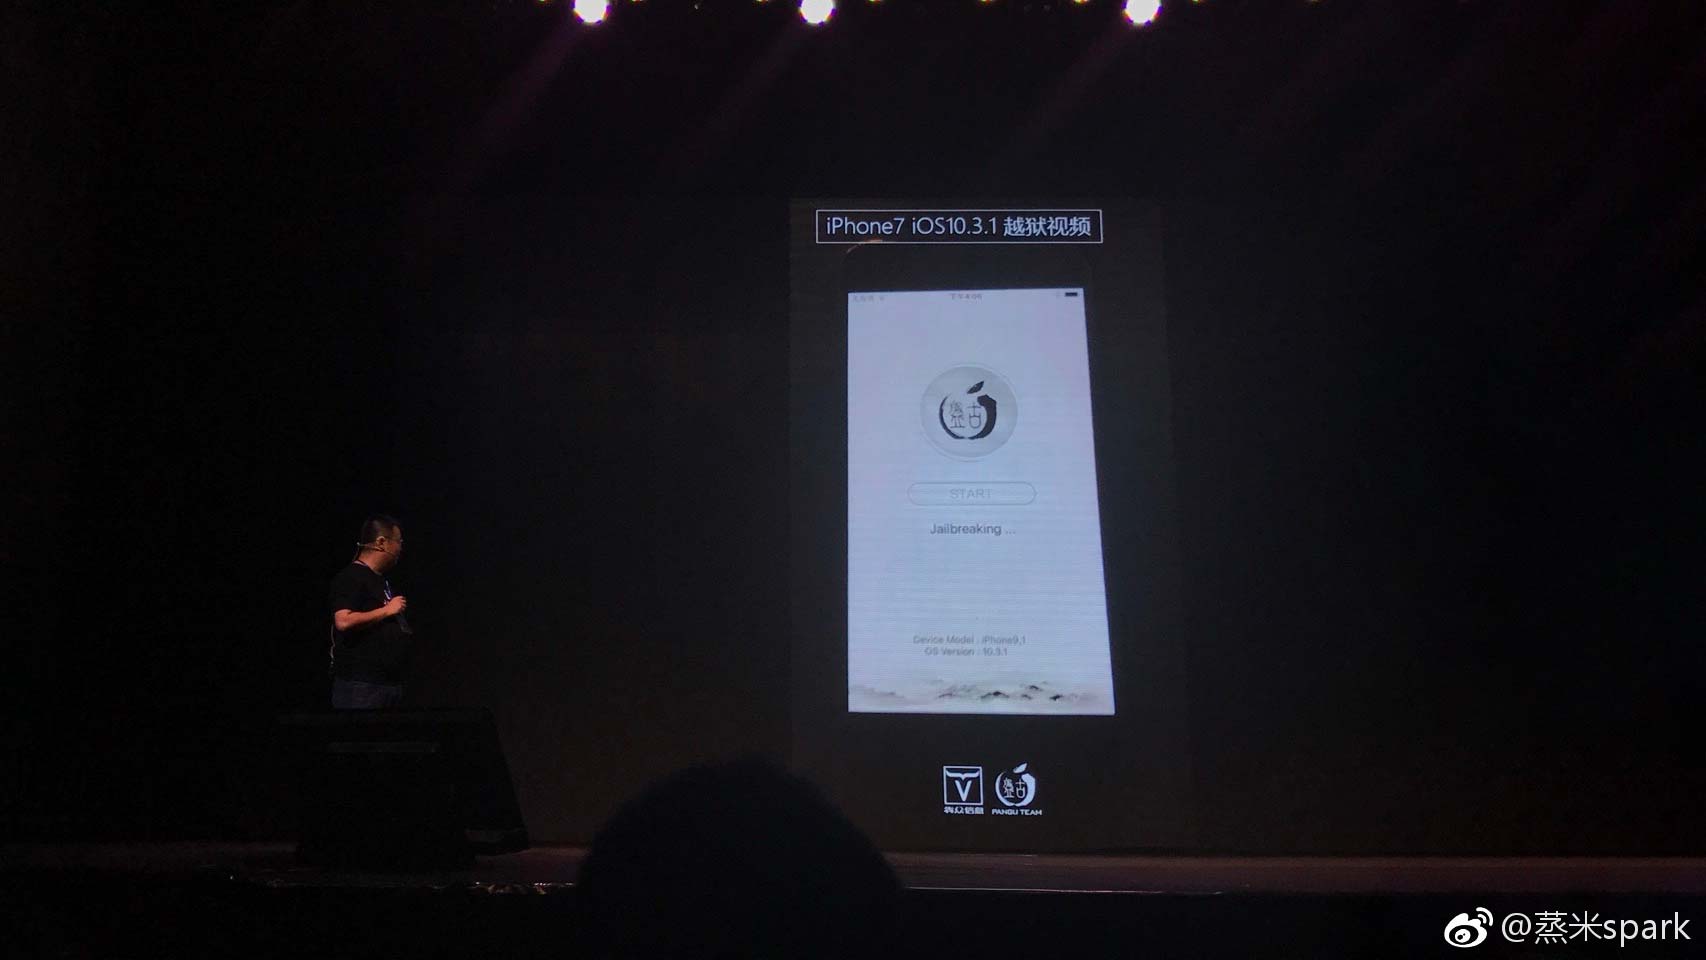 جيلبريك بانجو iOS 10.3.1